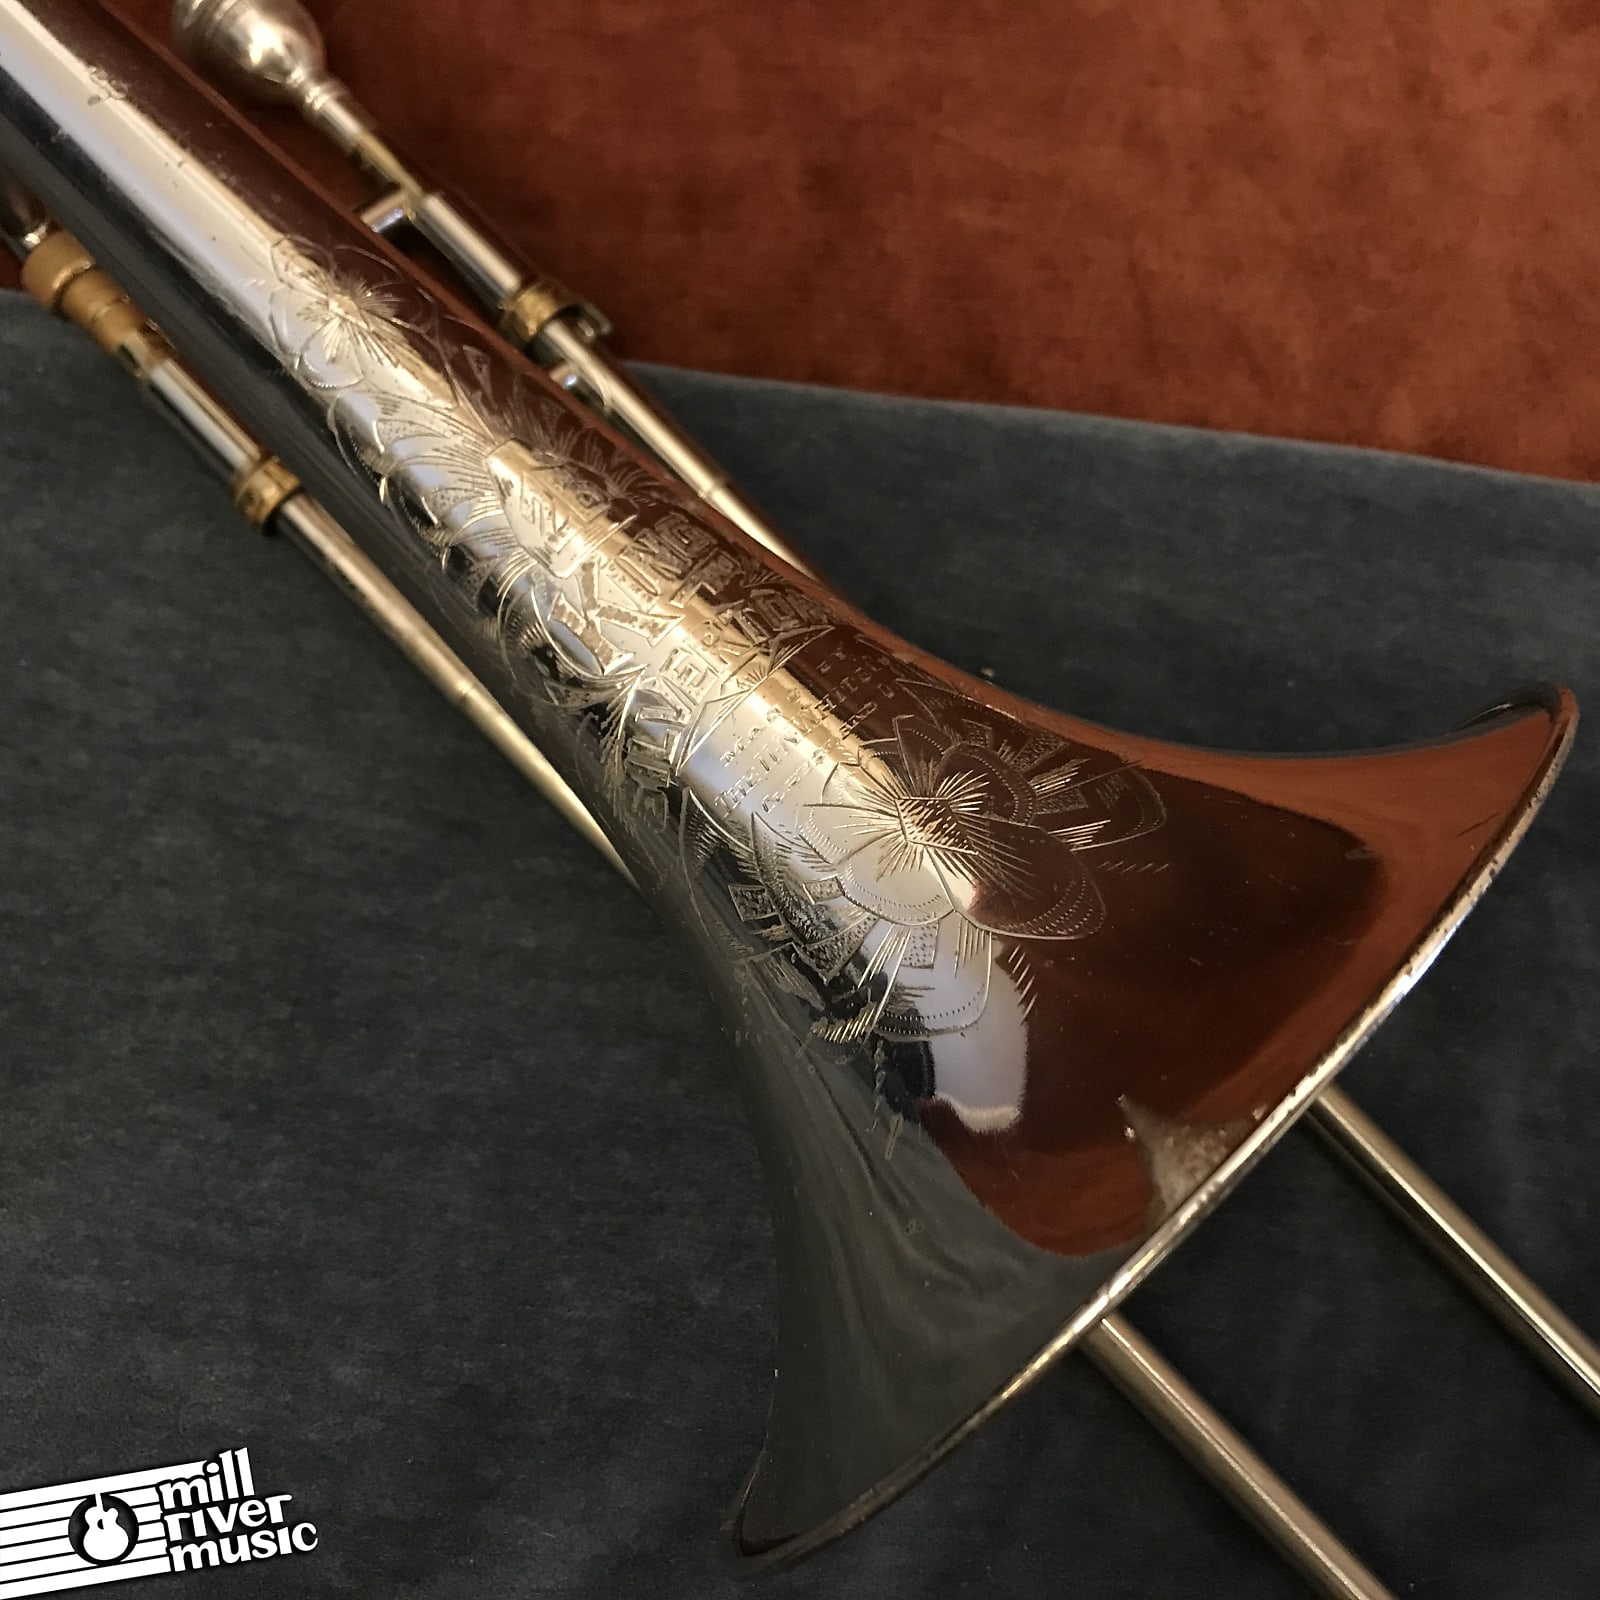 King 2B Silvertone Tenor Trombone c. 1940 w/ Case & Mouthpiece